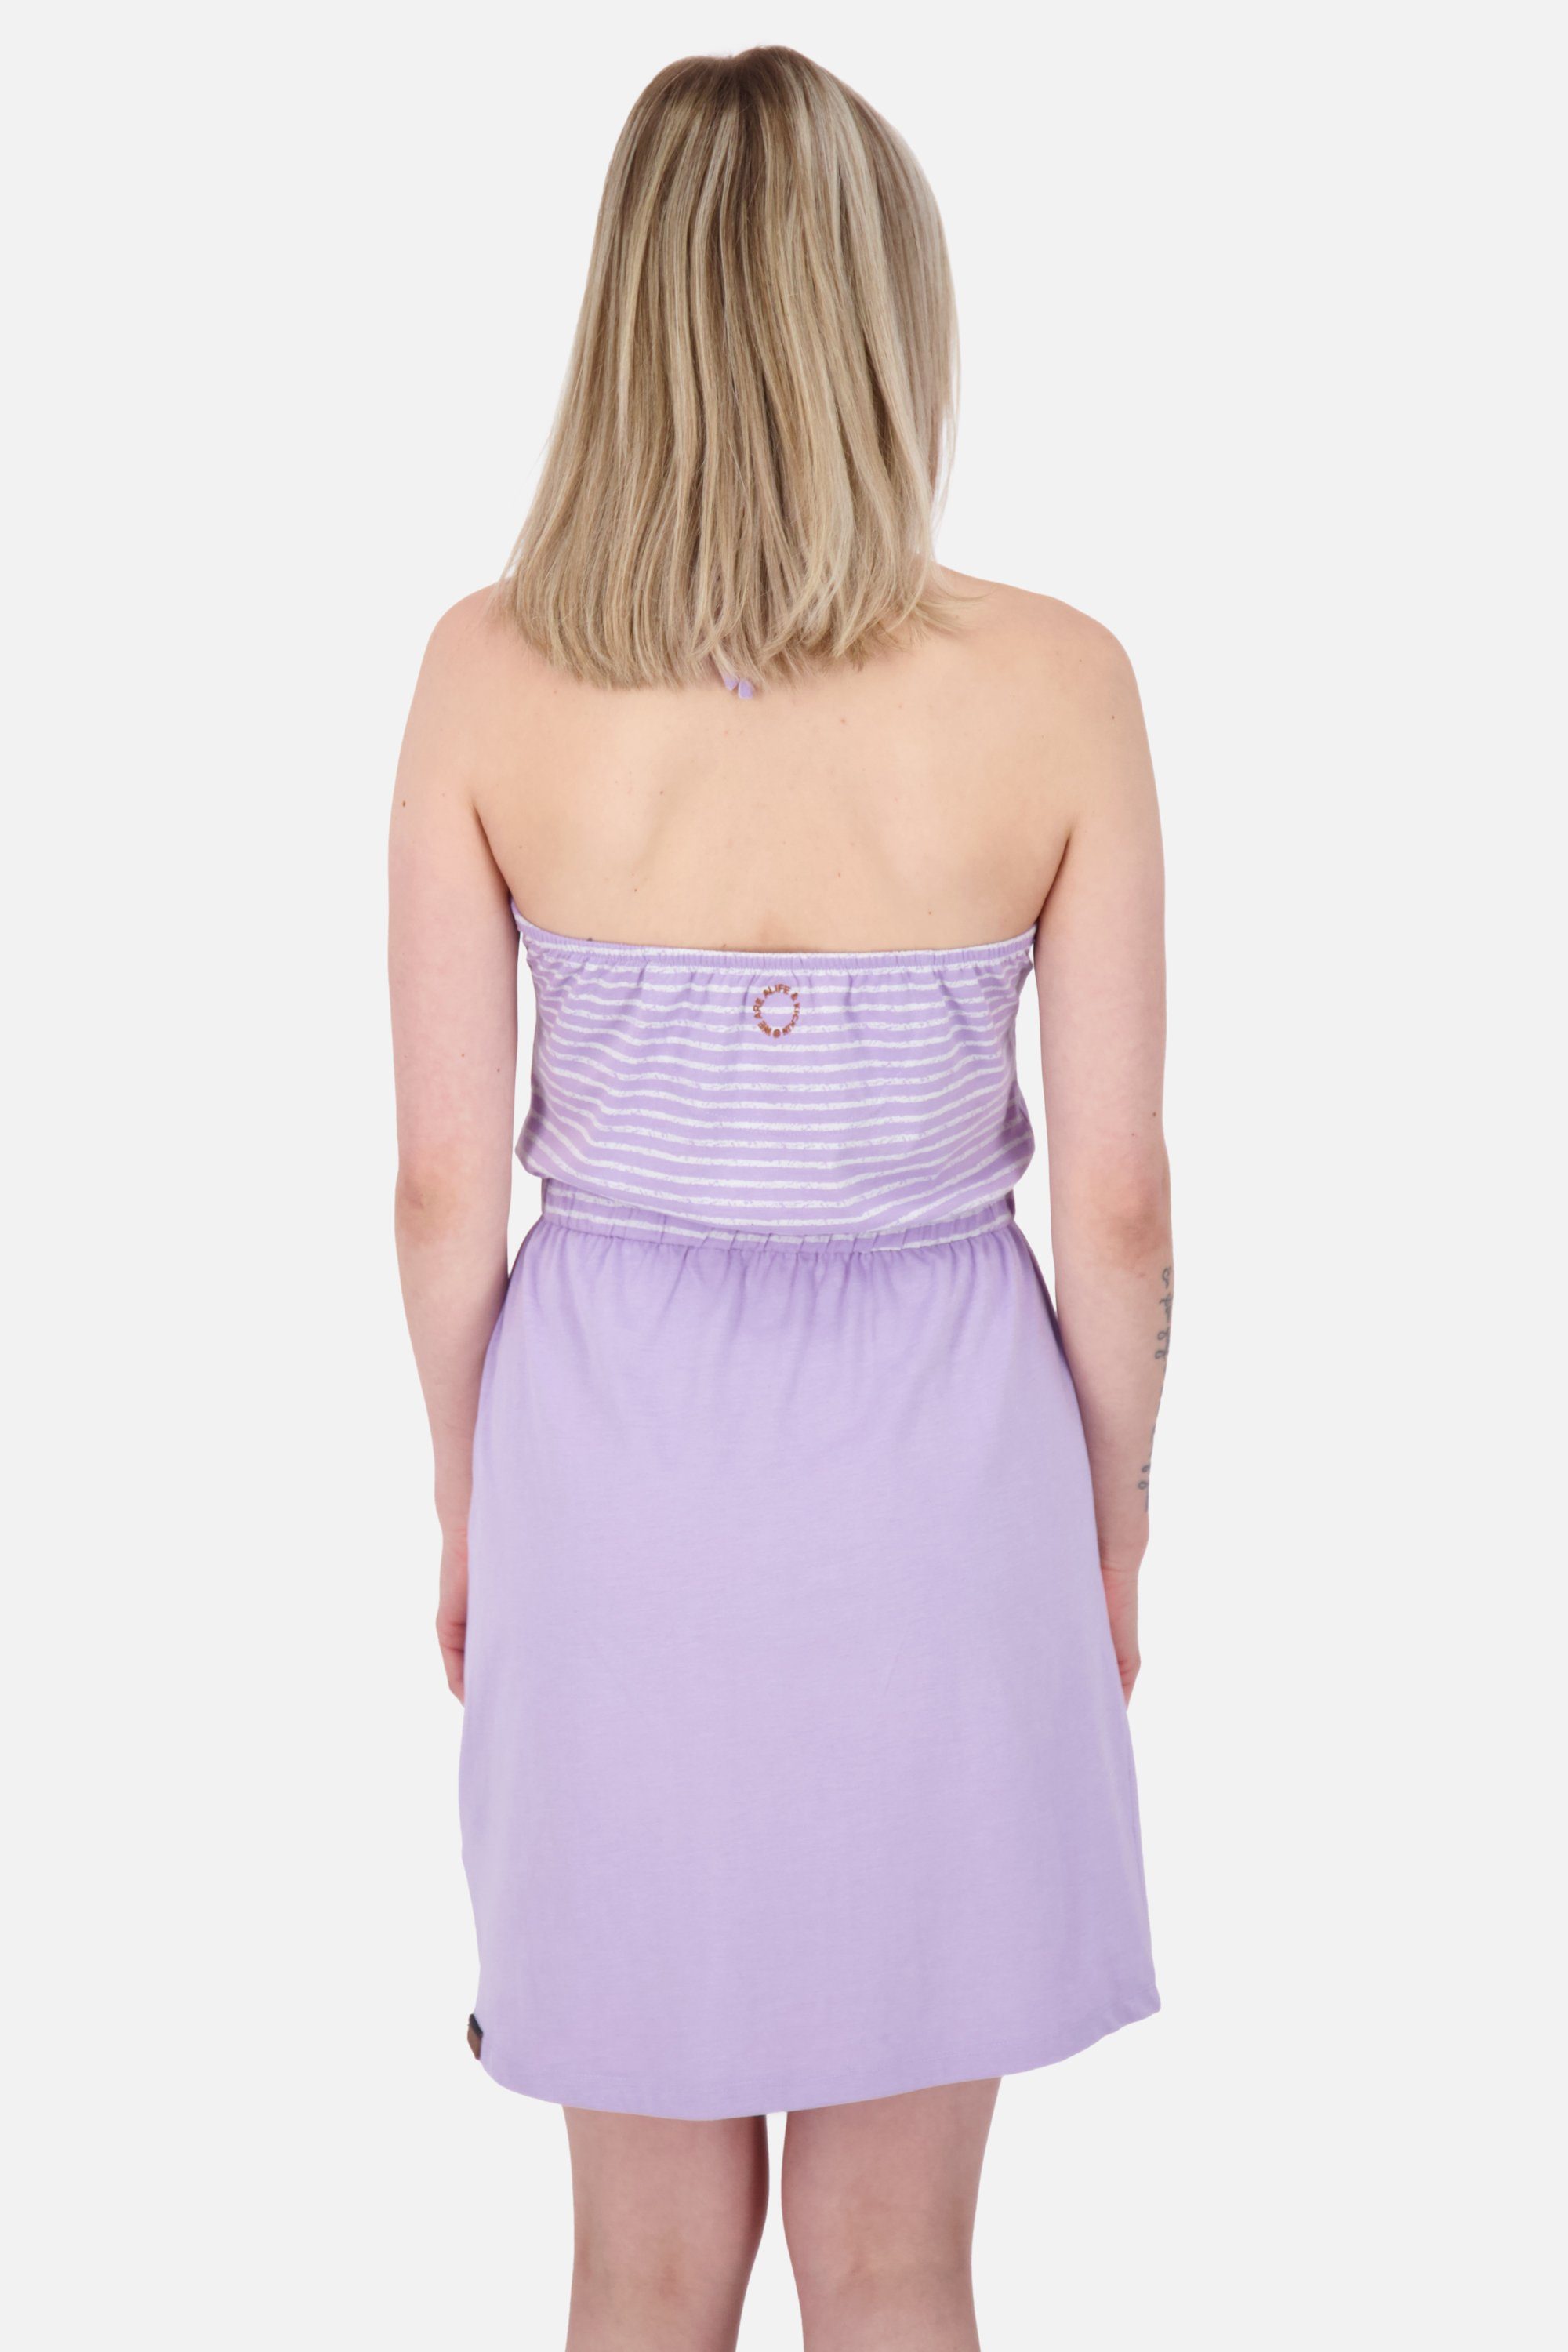 Alife & Kickin Sommerkleid, Sleeveless Dress VerenaAK digital Z Sommerkleid Kleid Damen lavender